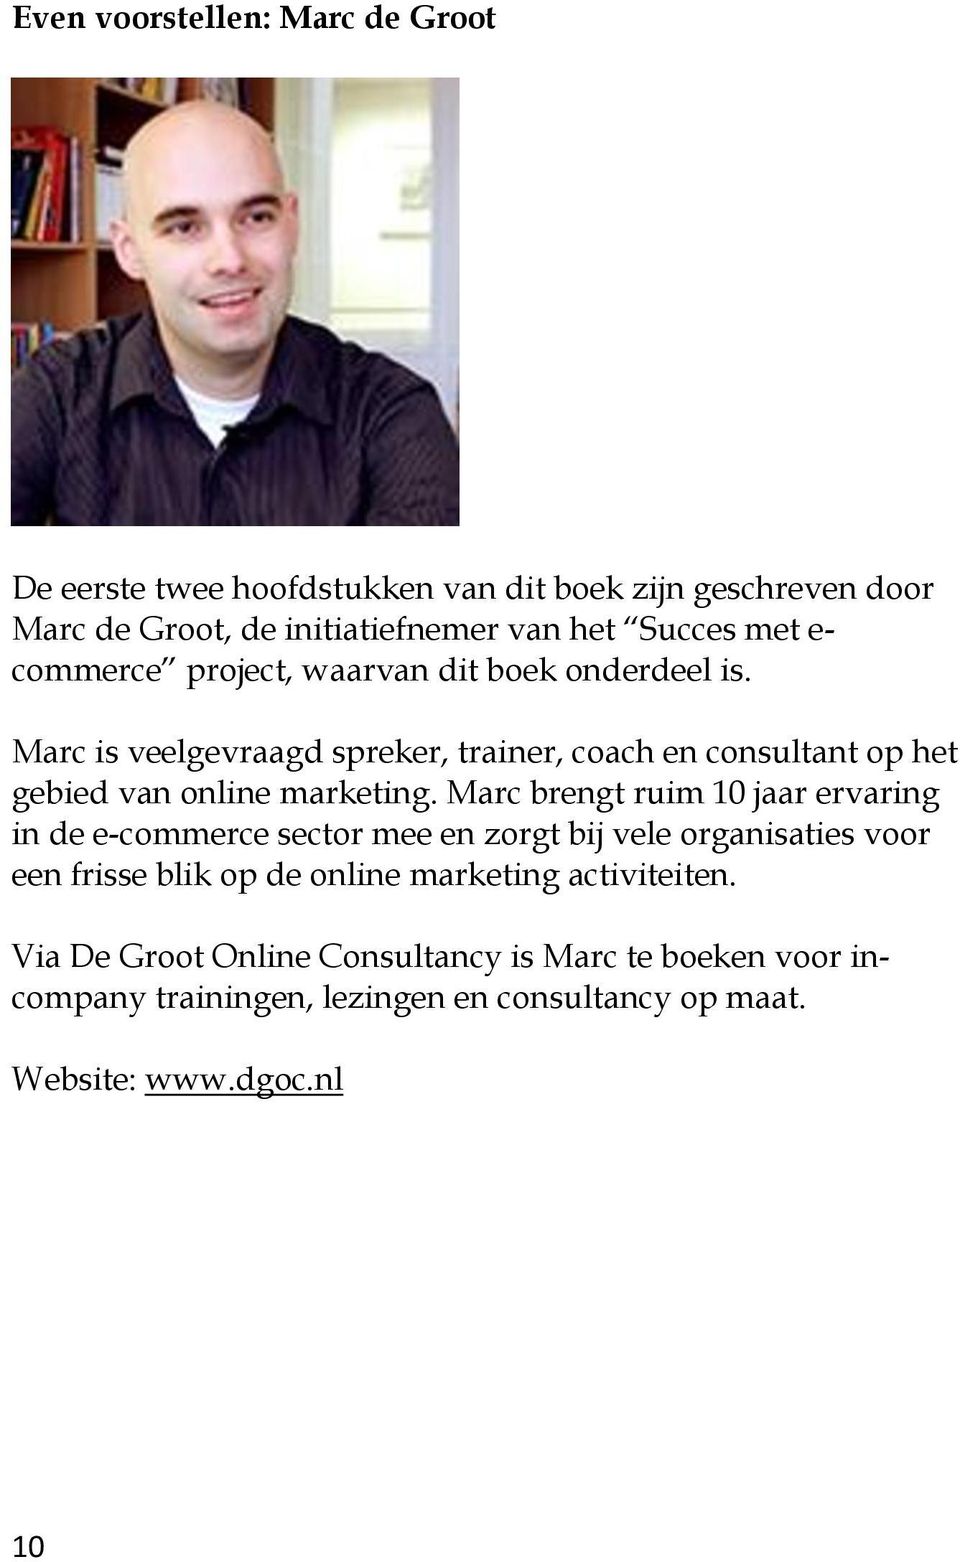 Marc is veelgevraagd spreker, trainer, coach en consultant op het gebied van online marketing.